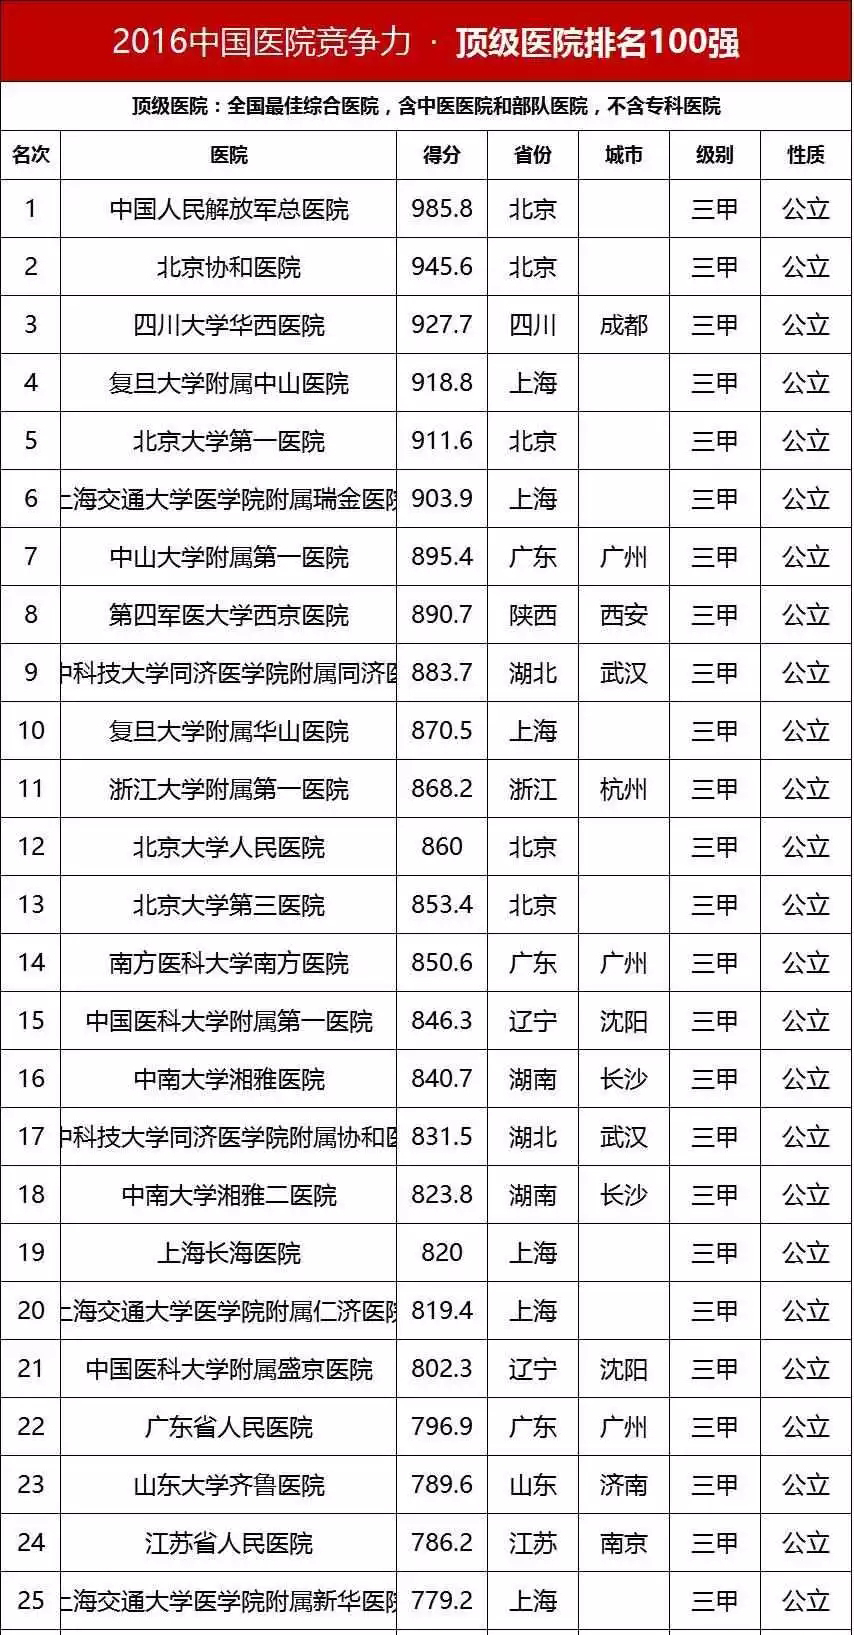 中国<font color="red">顶级</font>医院100强榜单出炉